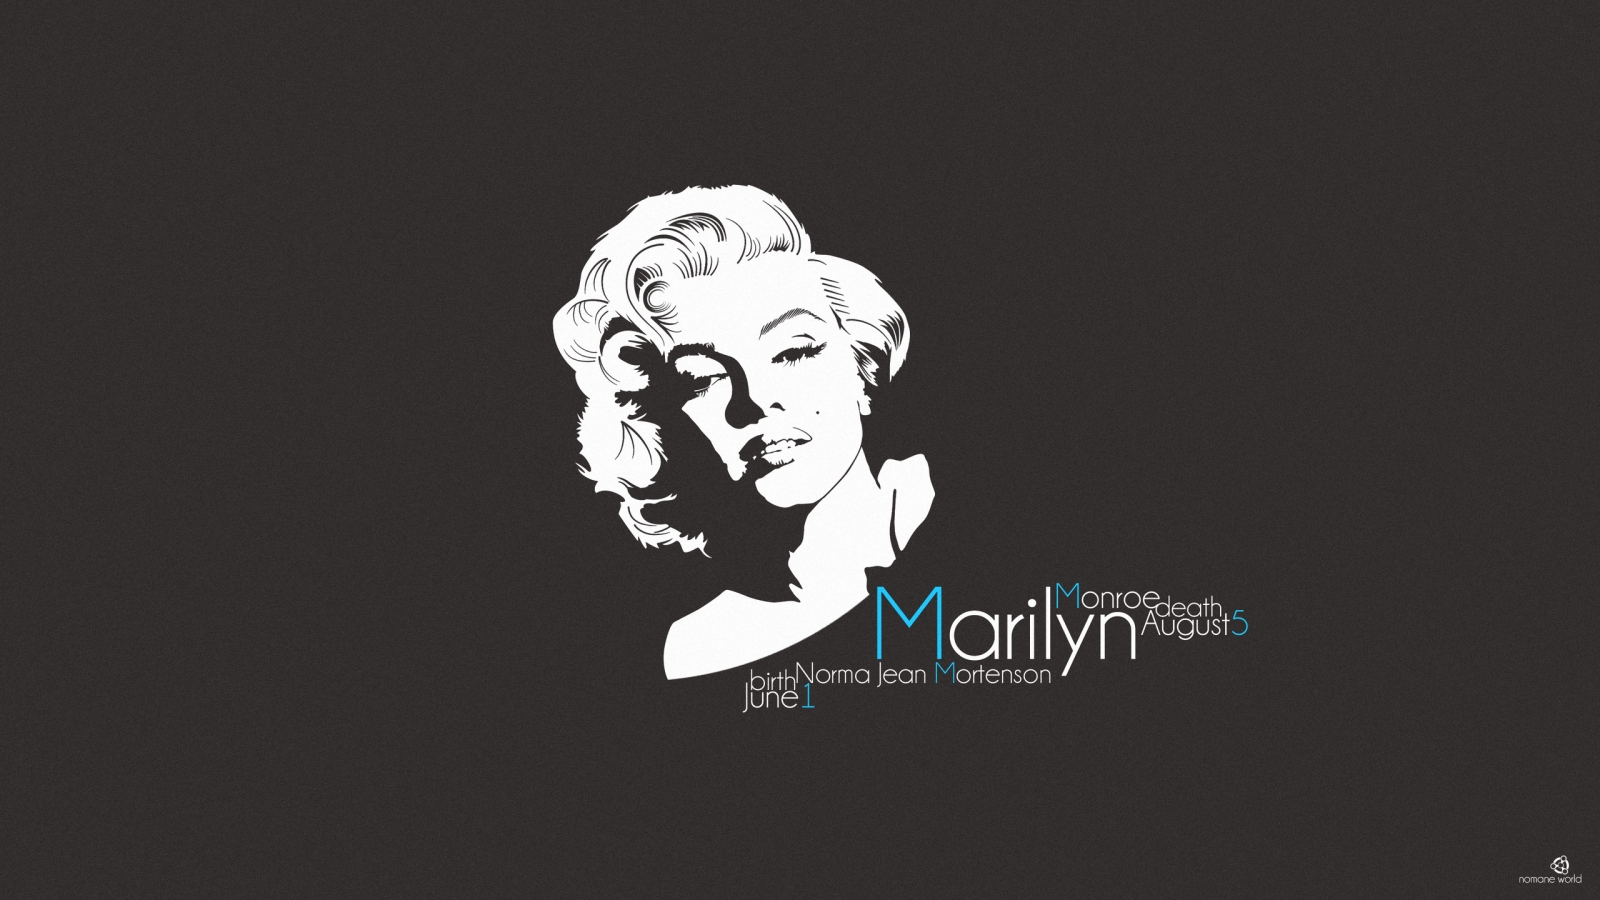 Marilyn Monroe for 1600 x 900 HDTV resolution